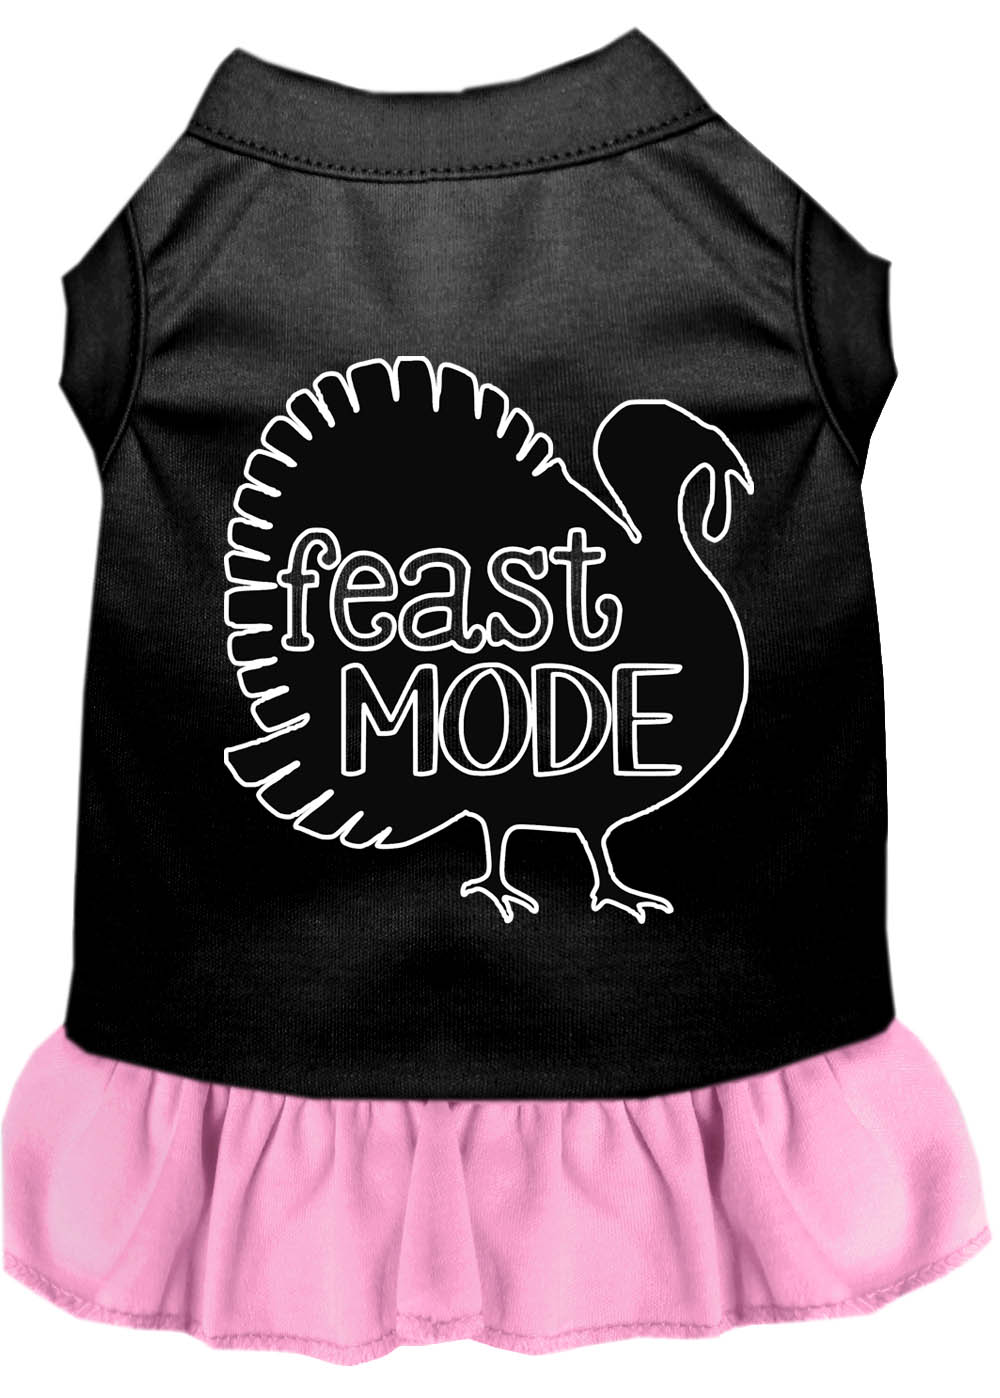 Feast Mode Screen Print Dog Dress Black with Light Pink XXXL